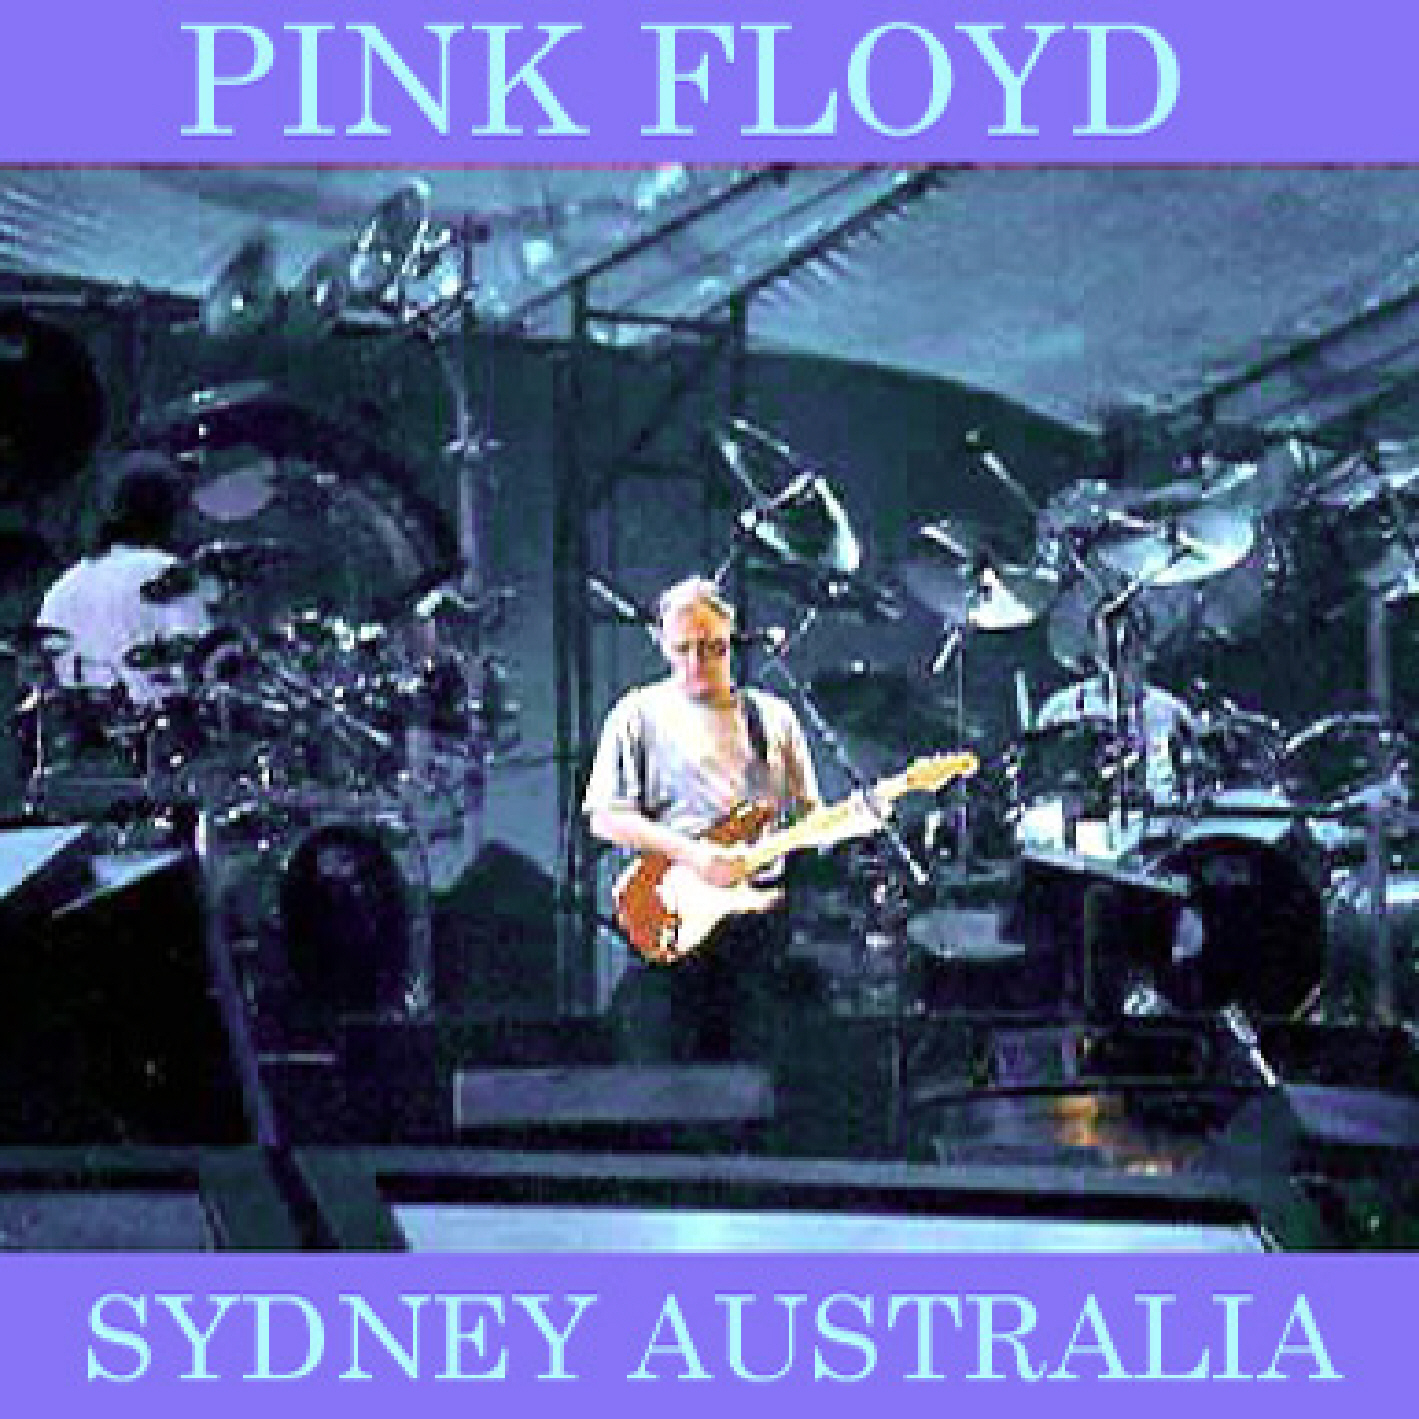 PinkFloyd1988-02-02TheEntertainmentCenterSydneyAustralia (1).jpg